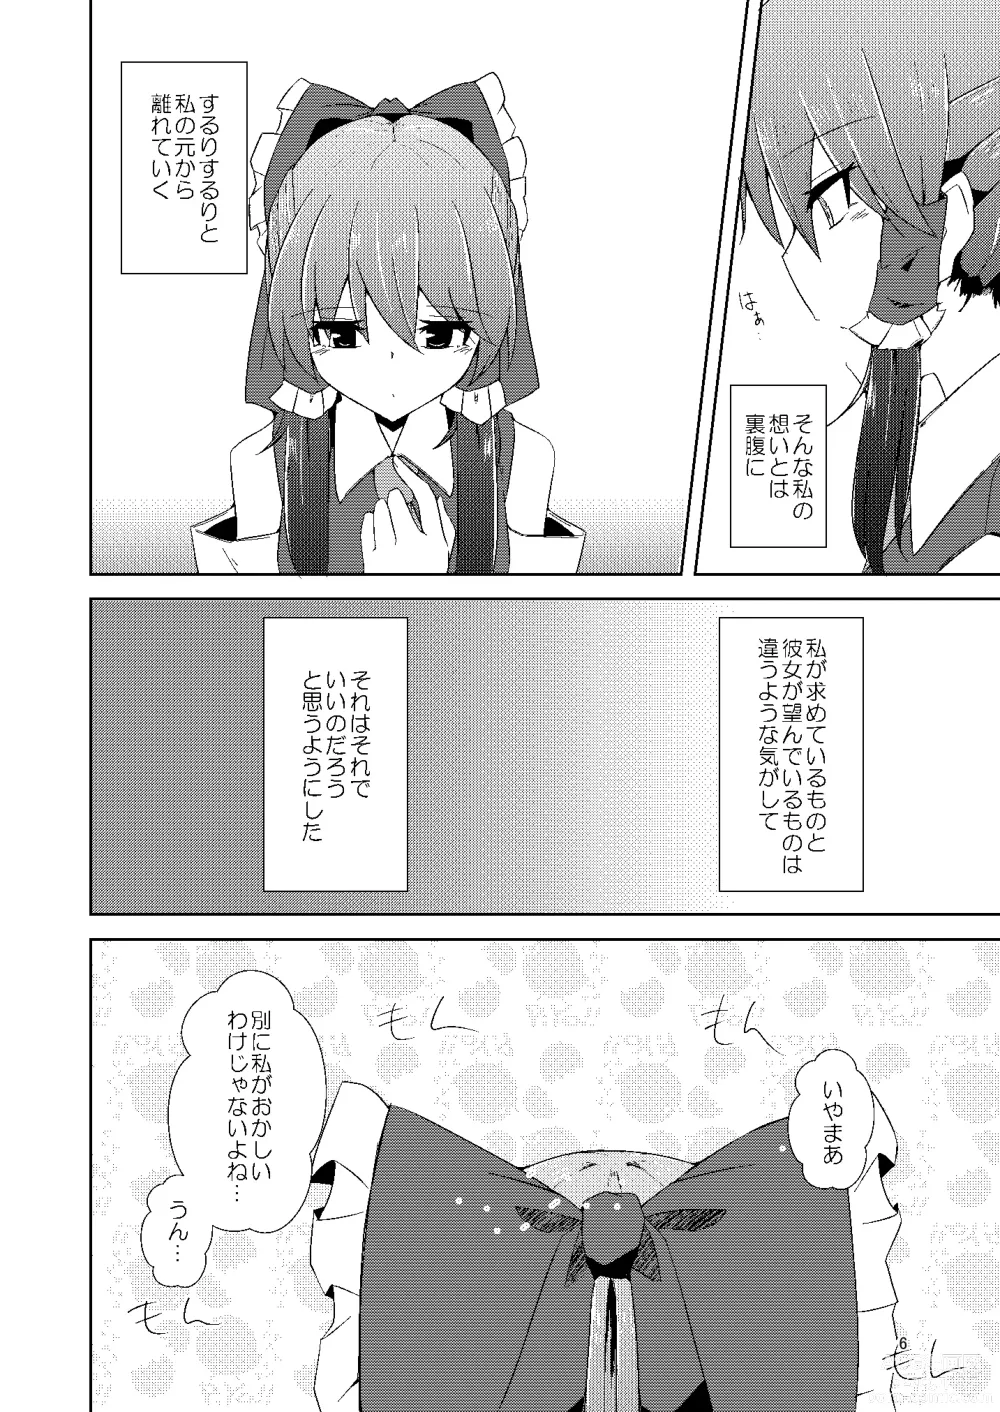 Page 5 of doujinshi Onaji desu ne